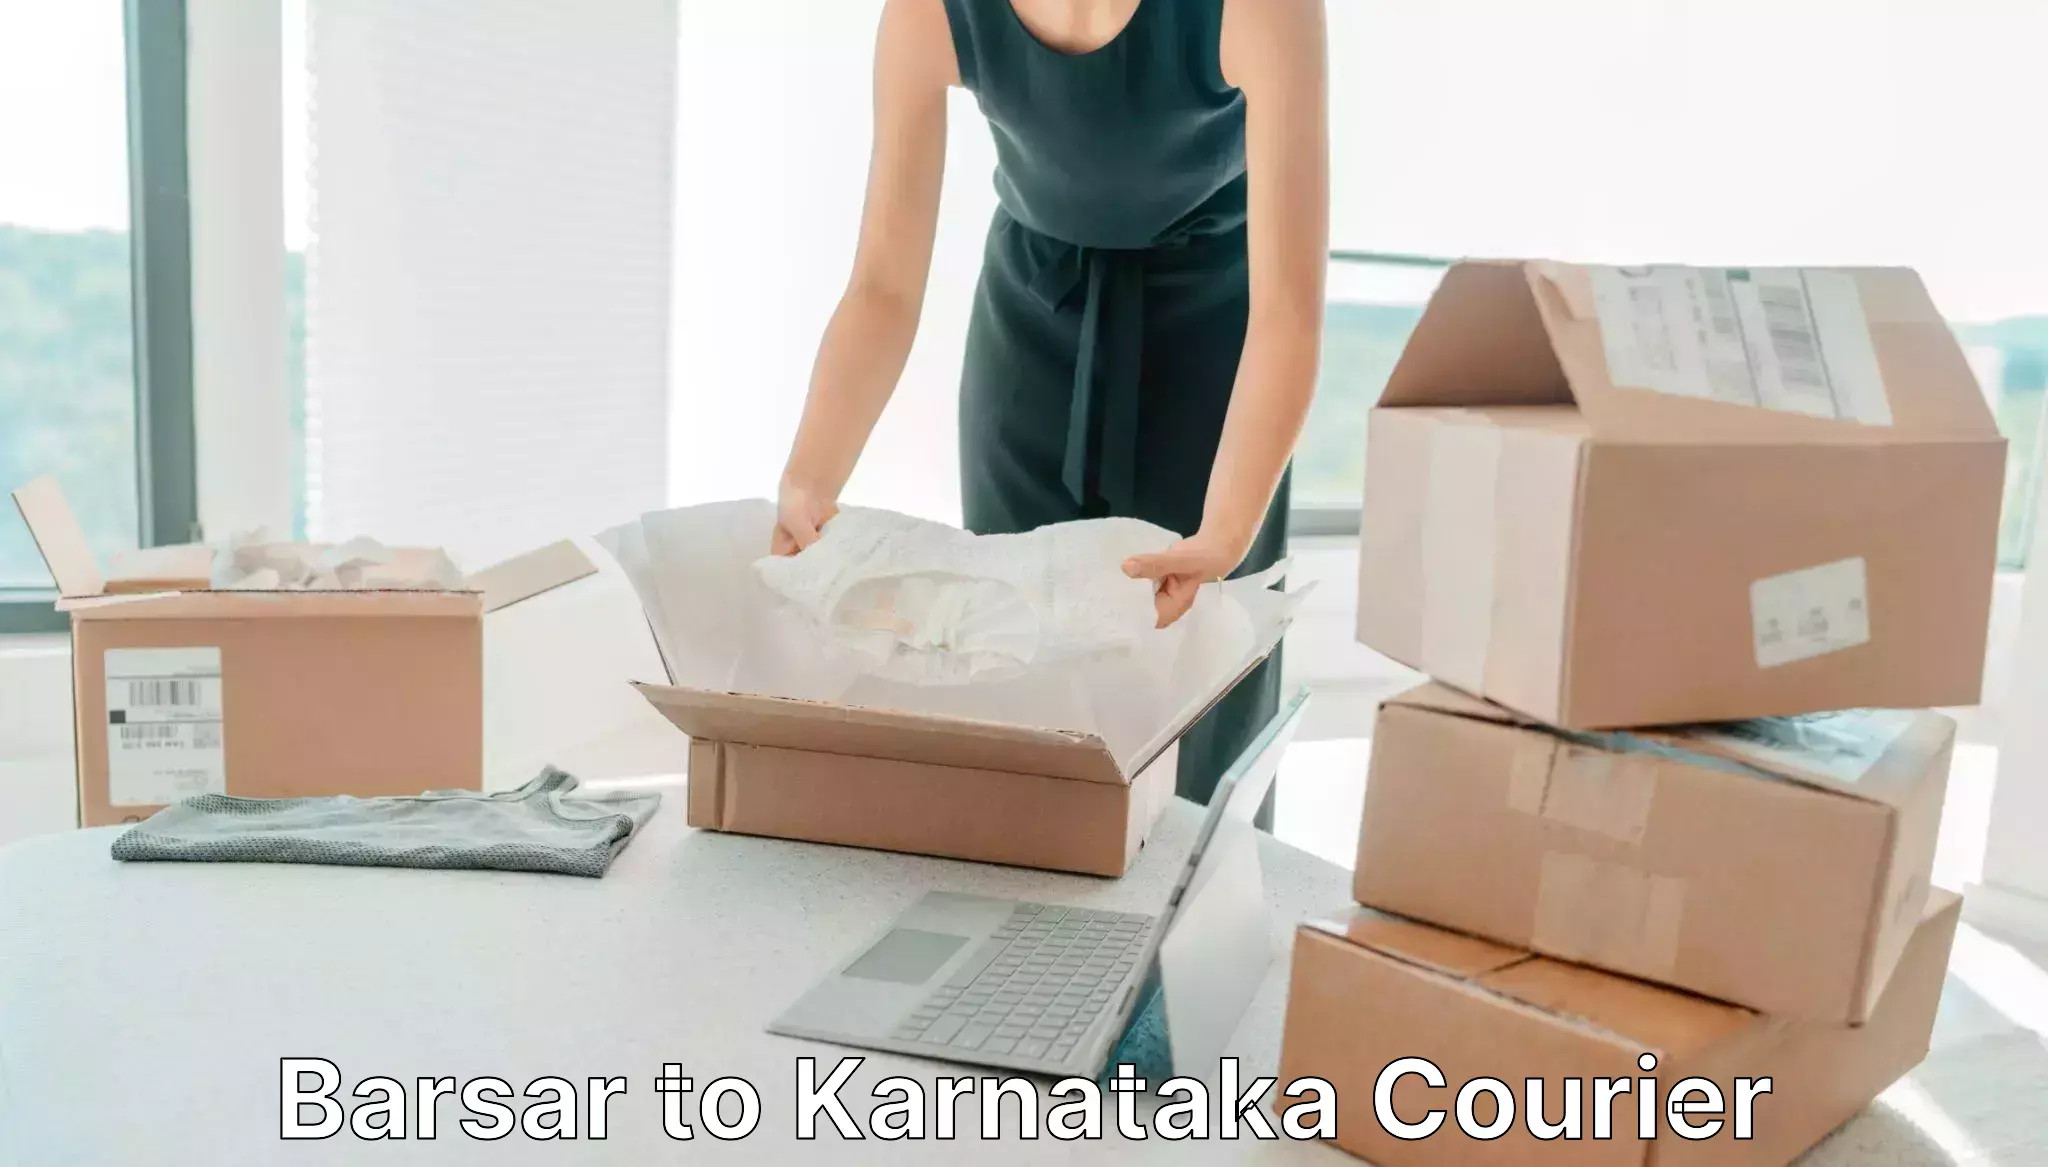 Efficient package consolidation Barsar to Karnataka